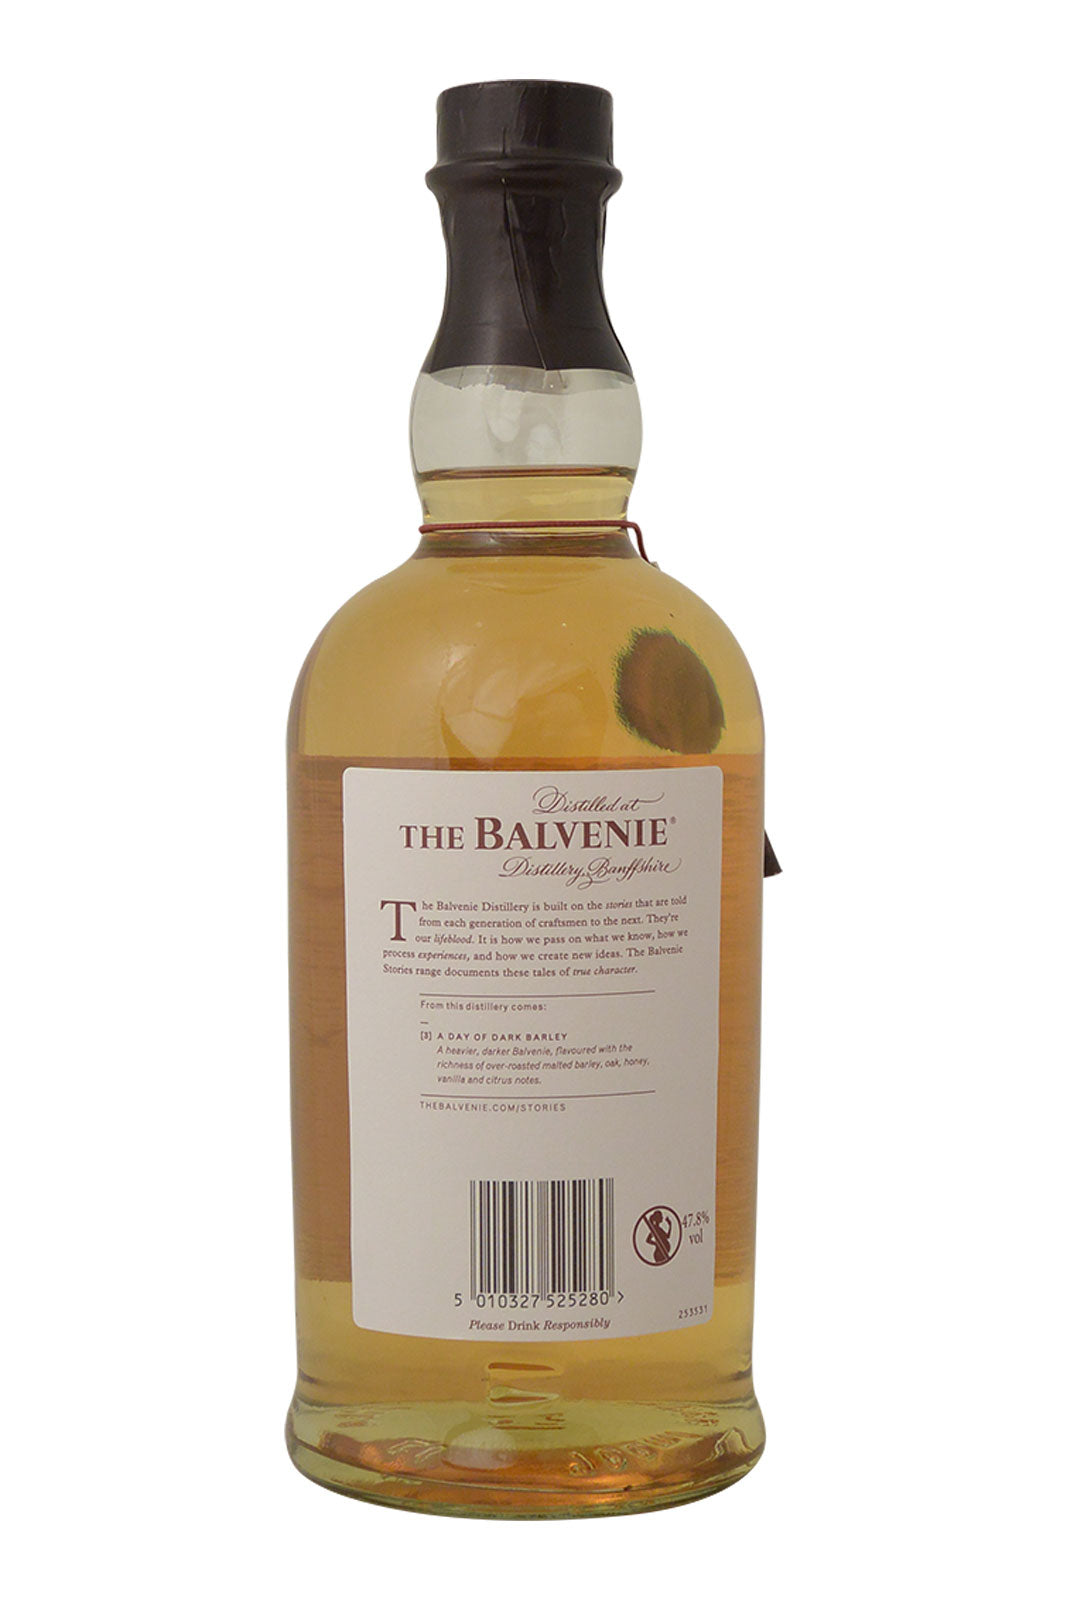 Balvenie 26 Year Old A Day of Dark Barley